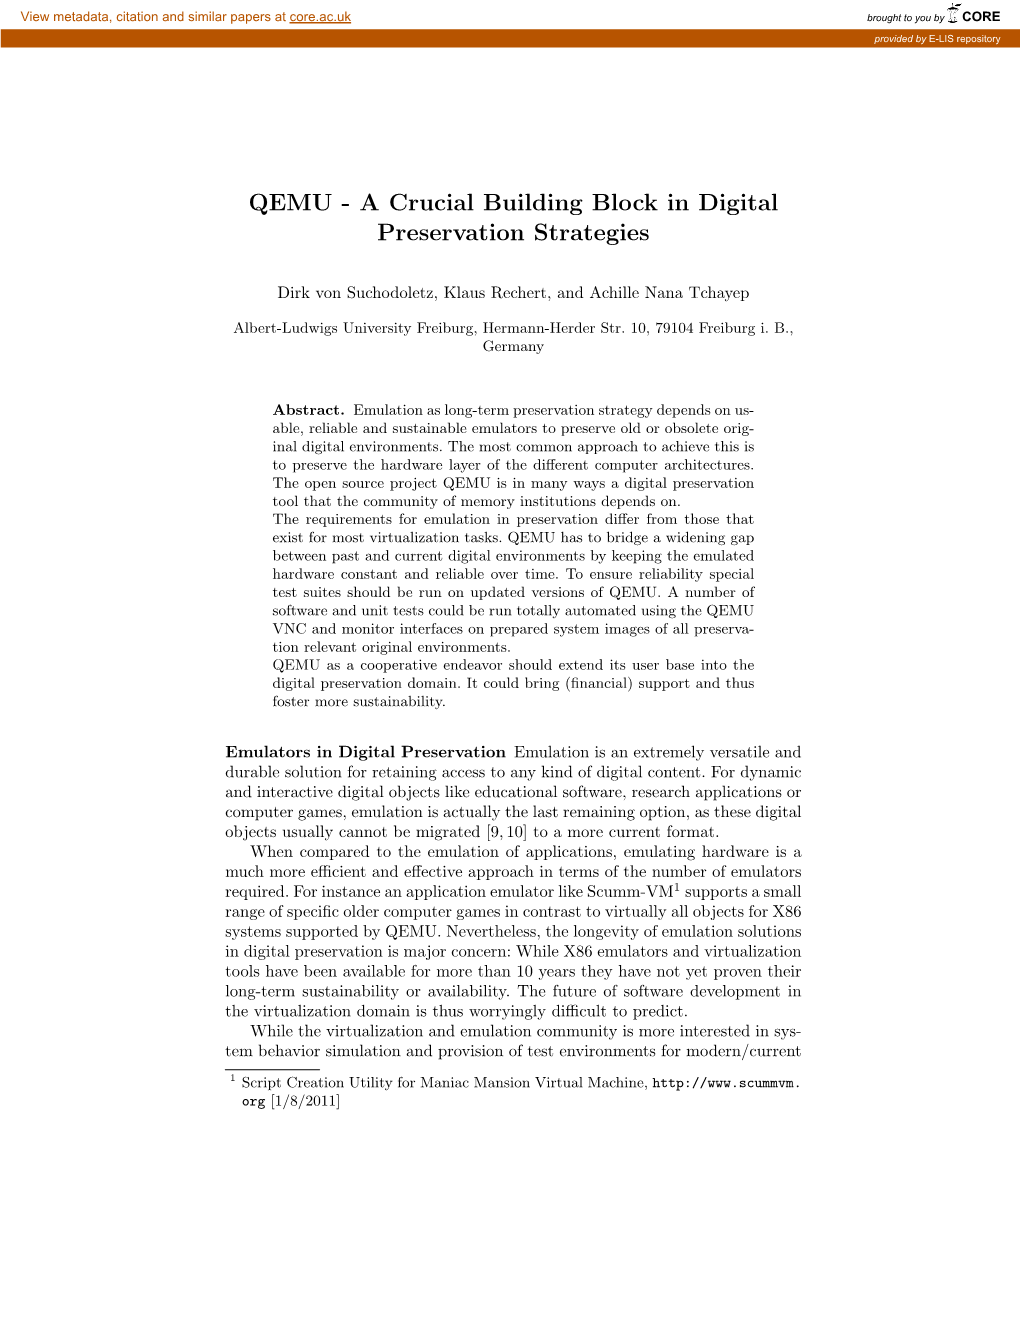 QEMU - a Crucial Building Block in Digital Preservation Strategies